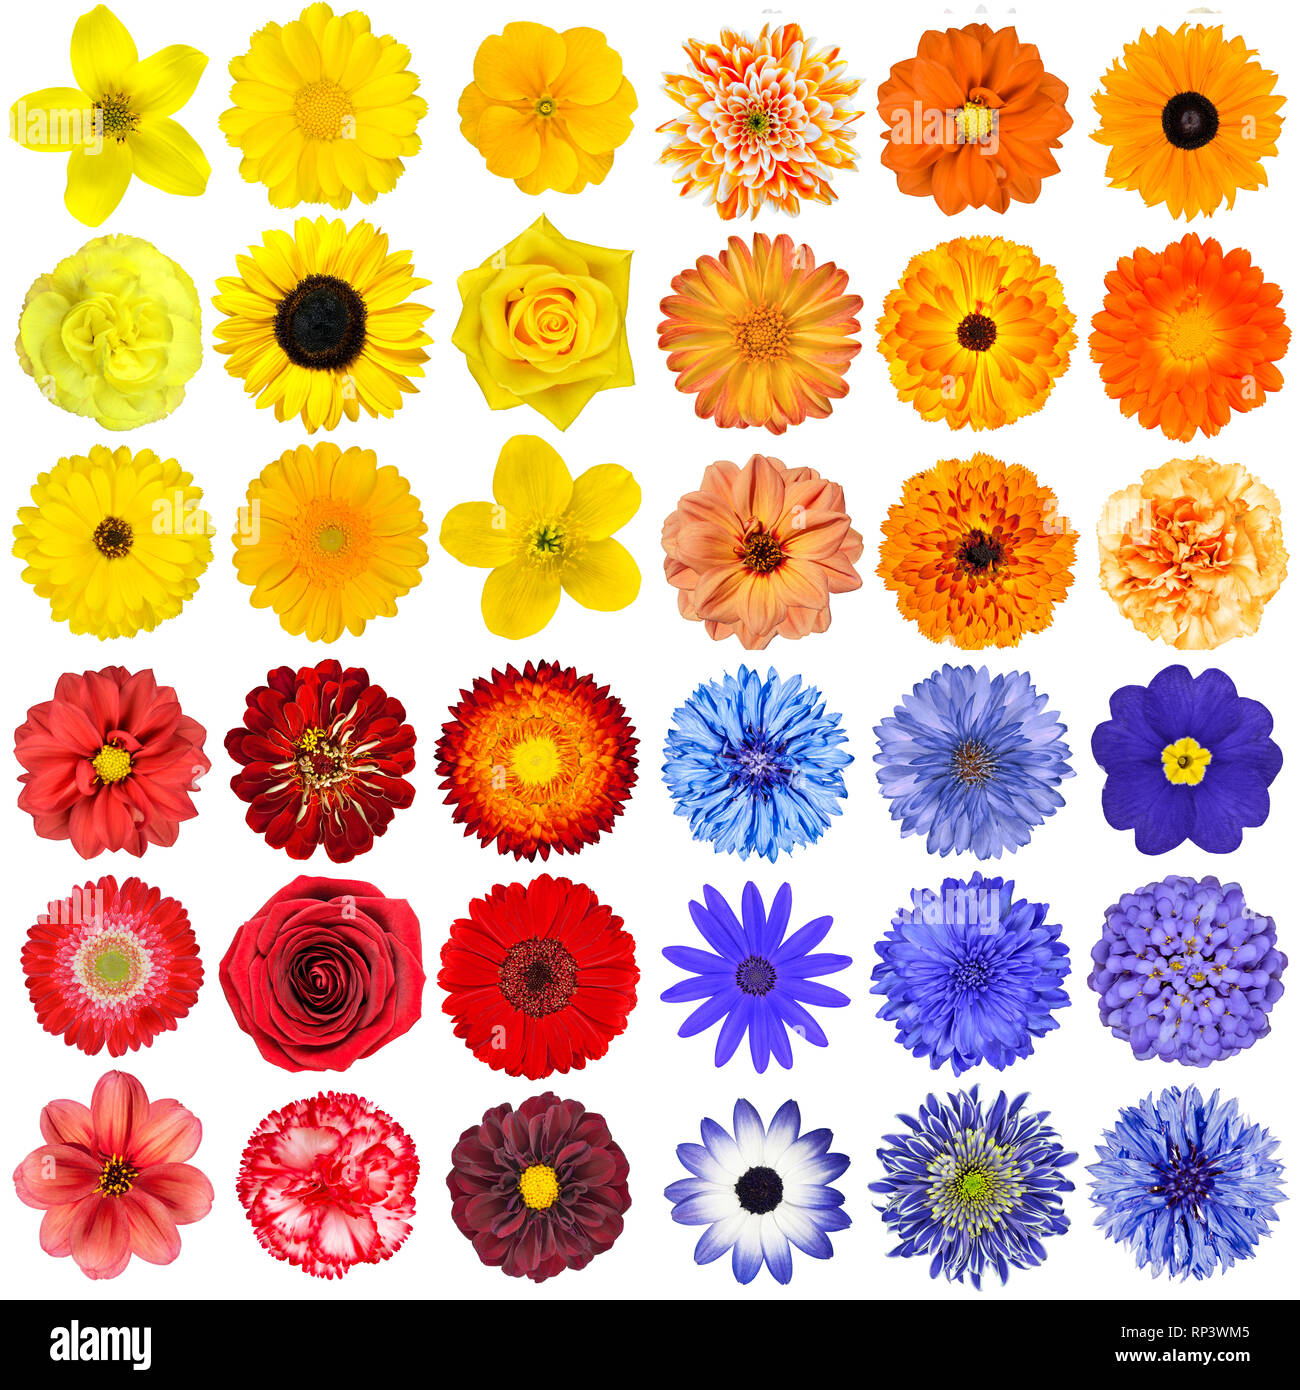 Große Auswahl von verschiedenen Orange, Violett, Blau und Rot Blumen isoliert auf weißem Hintergrund. Blumen sind Rosen, Dahlien, Sonnenblumen, Rose, Ringelblume, Stockfoto